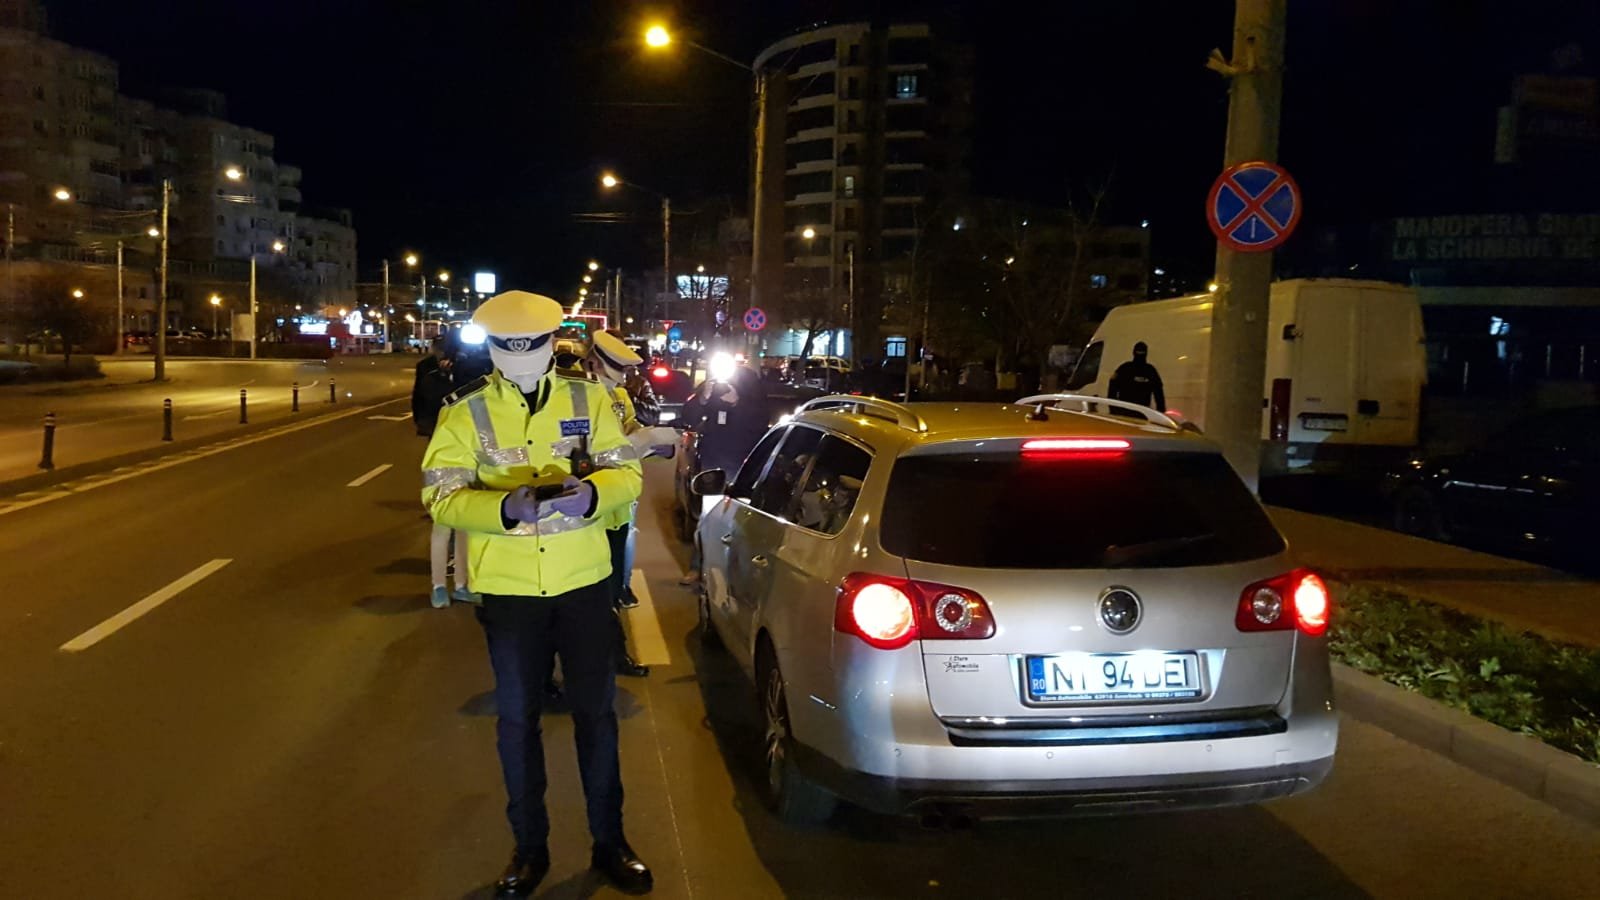  38 de amenzi date luni noaptea la Iași celor care au ieșit pe stradă fără acte